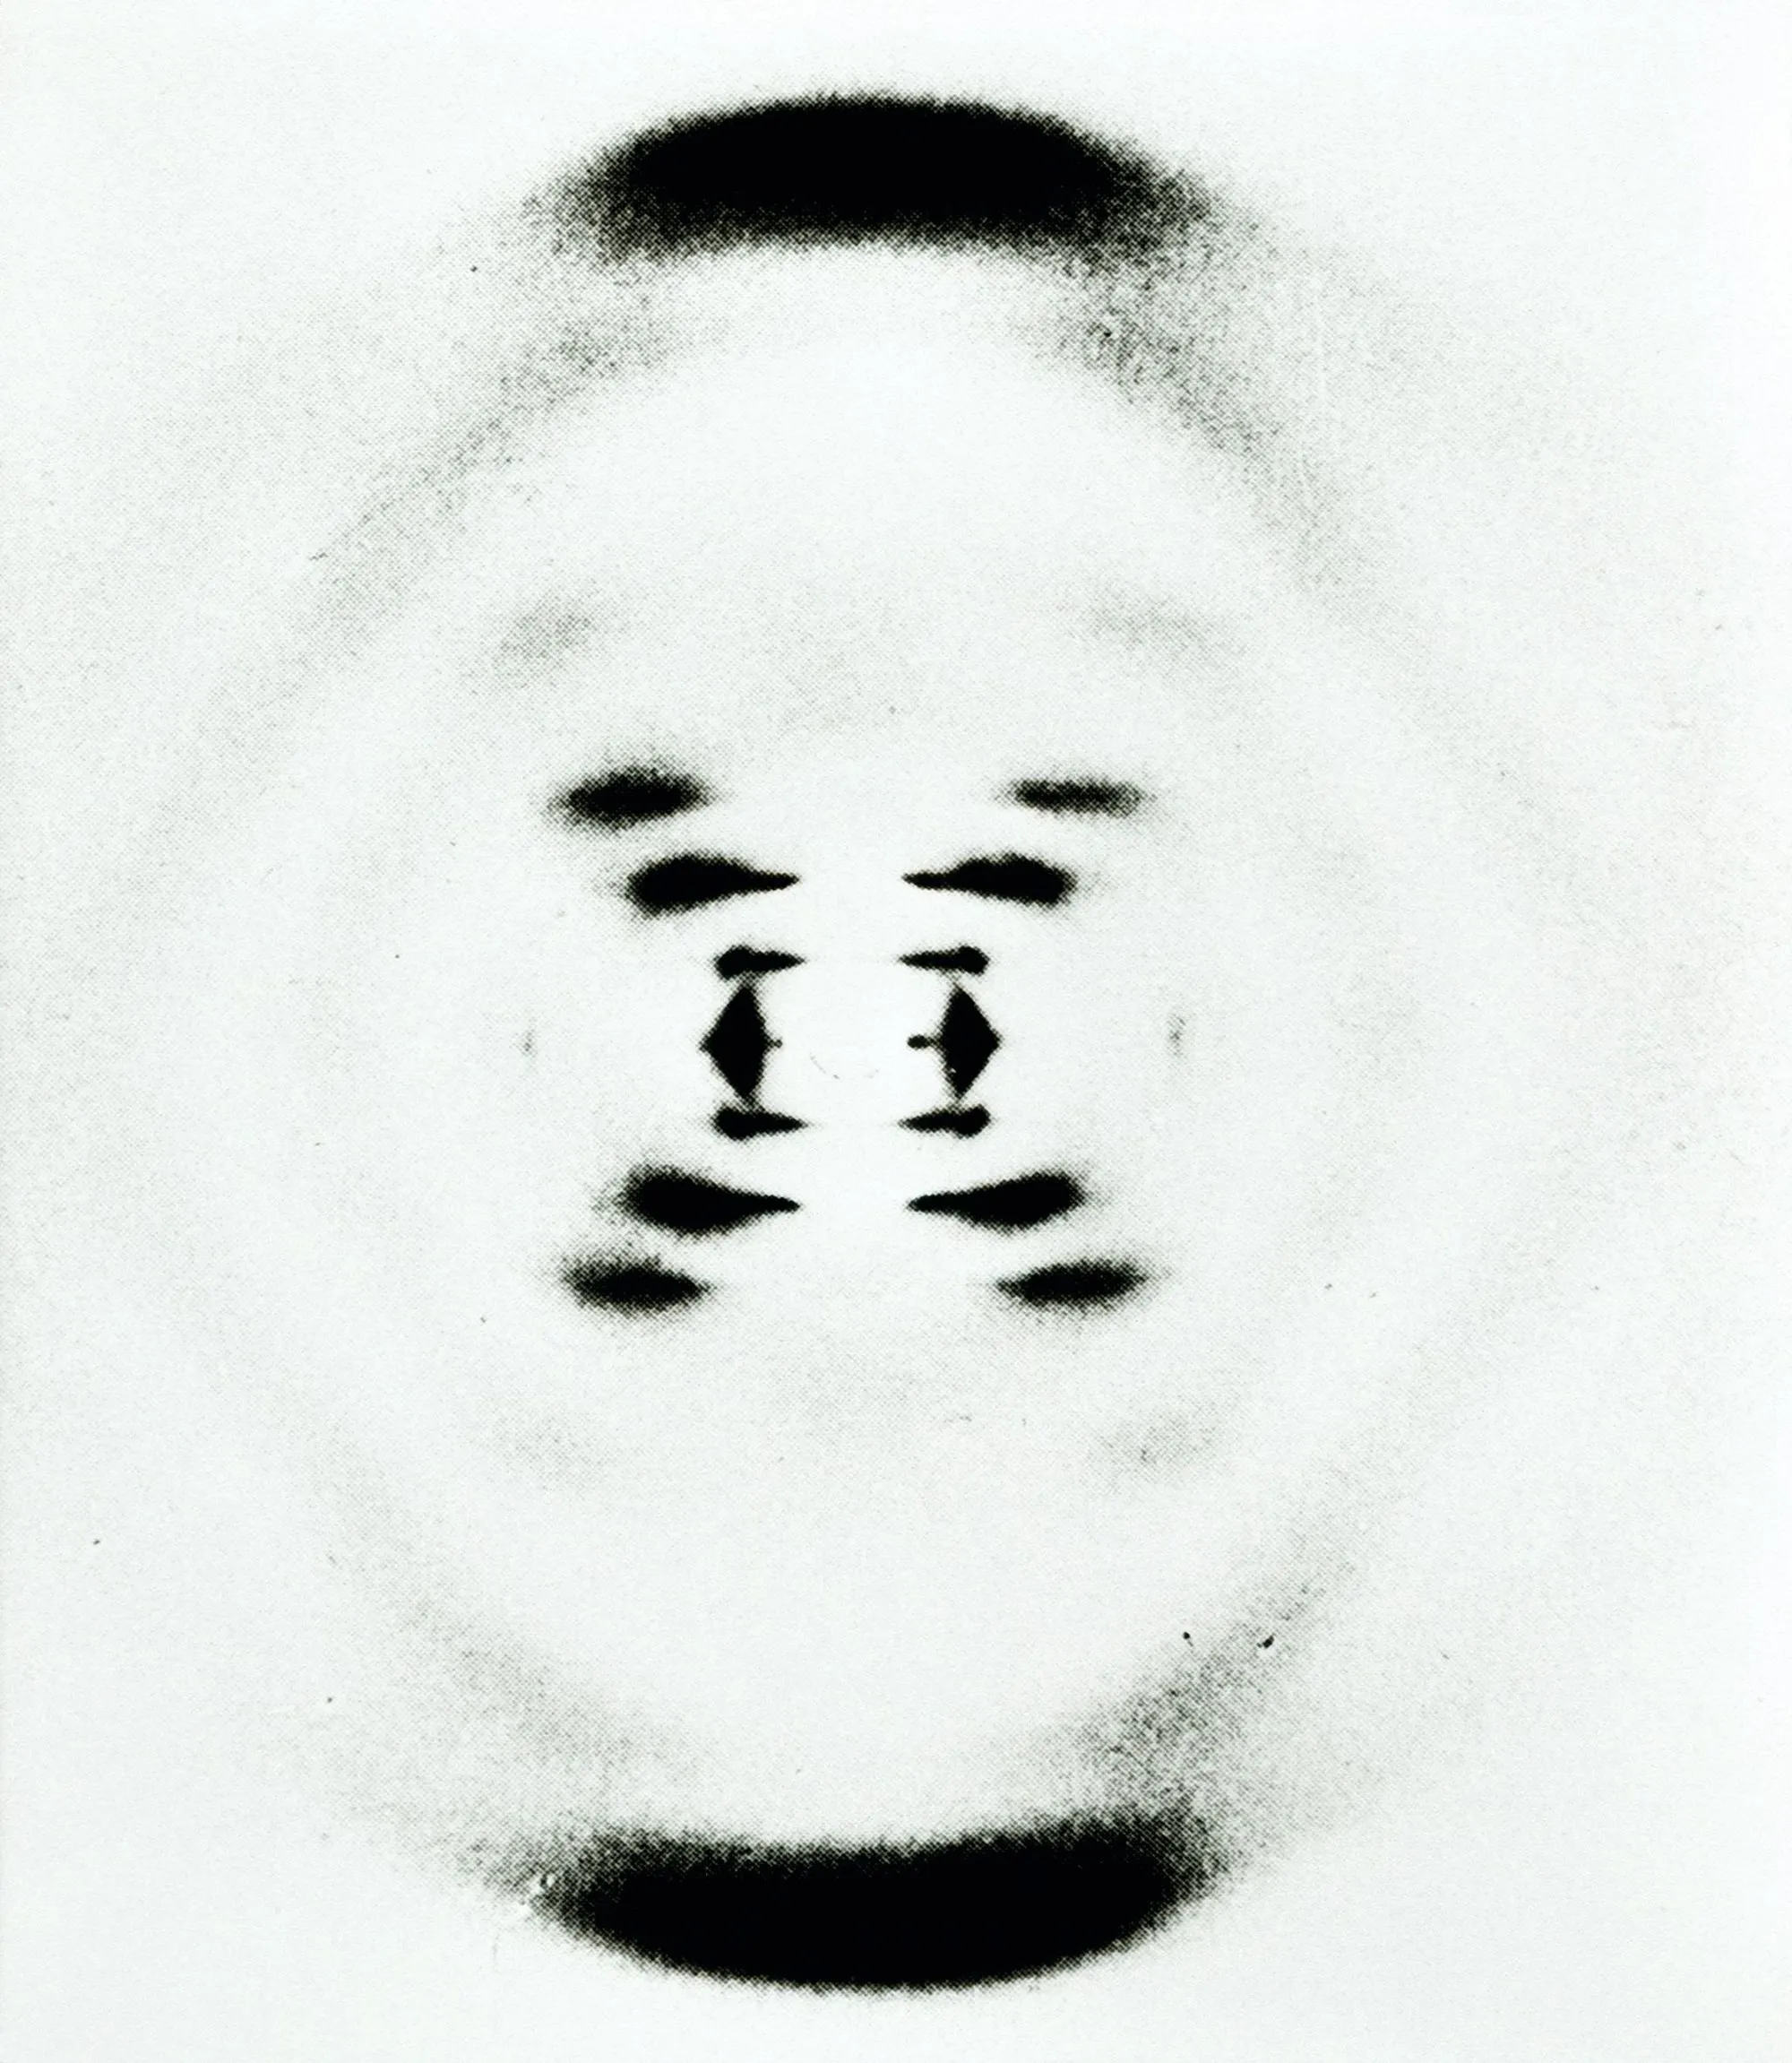 Photographie B51 de l'ADN obtenue par cristallographie aux rayons X